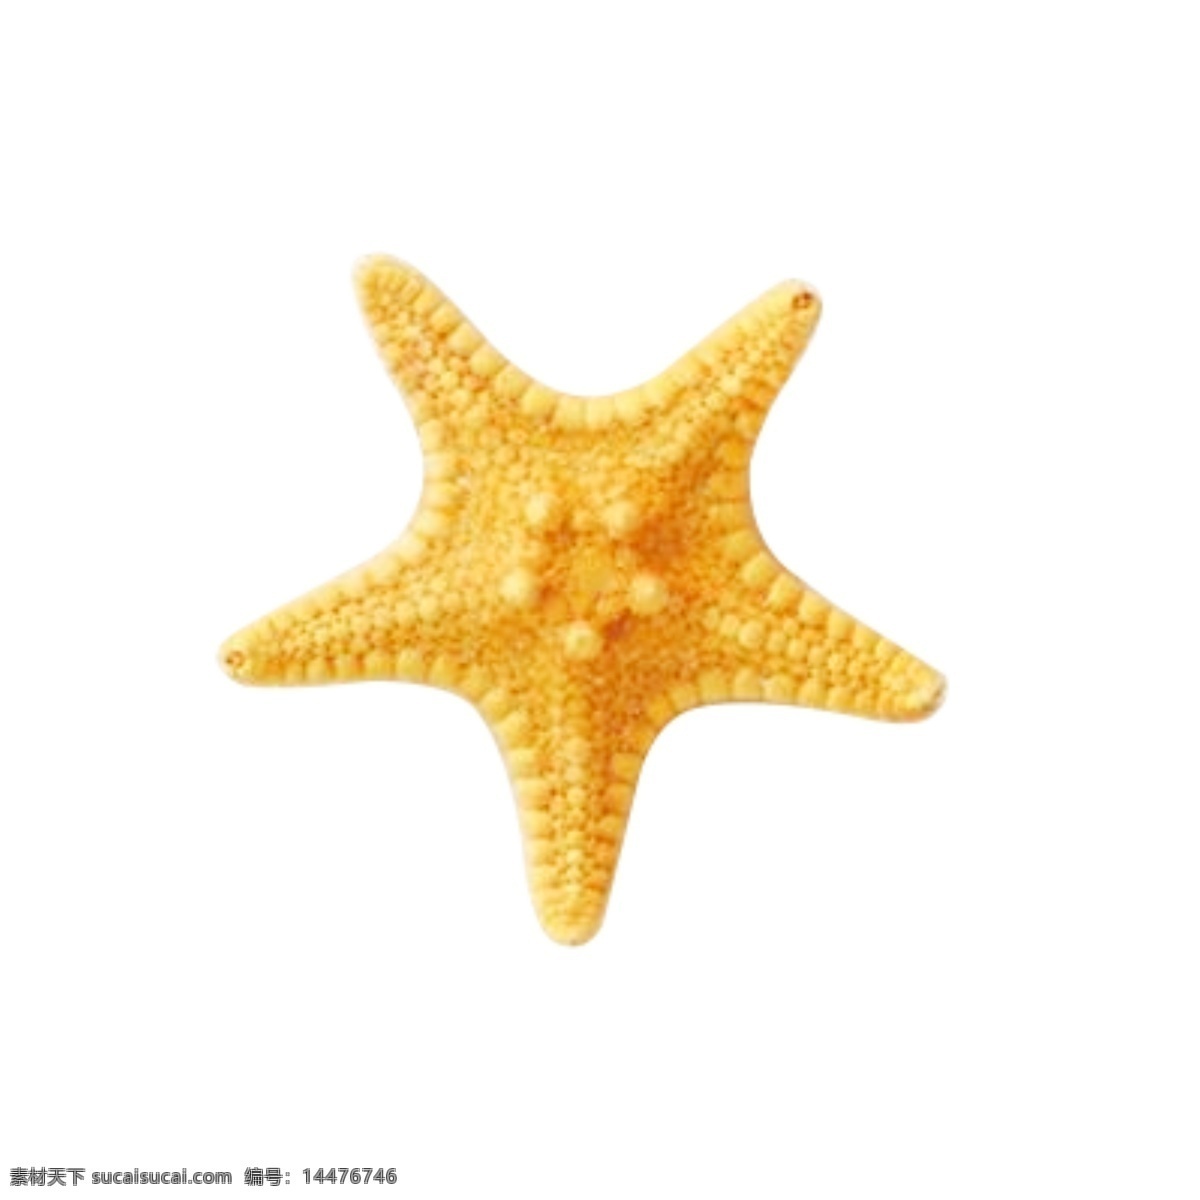 海星 夏日 沙滩 贝壳 漂流 海螺 金黄色 旅游 太阳镜 三亚风景 海滩 素材图